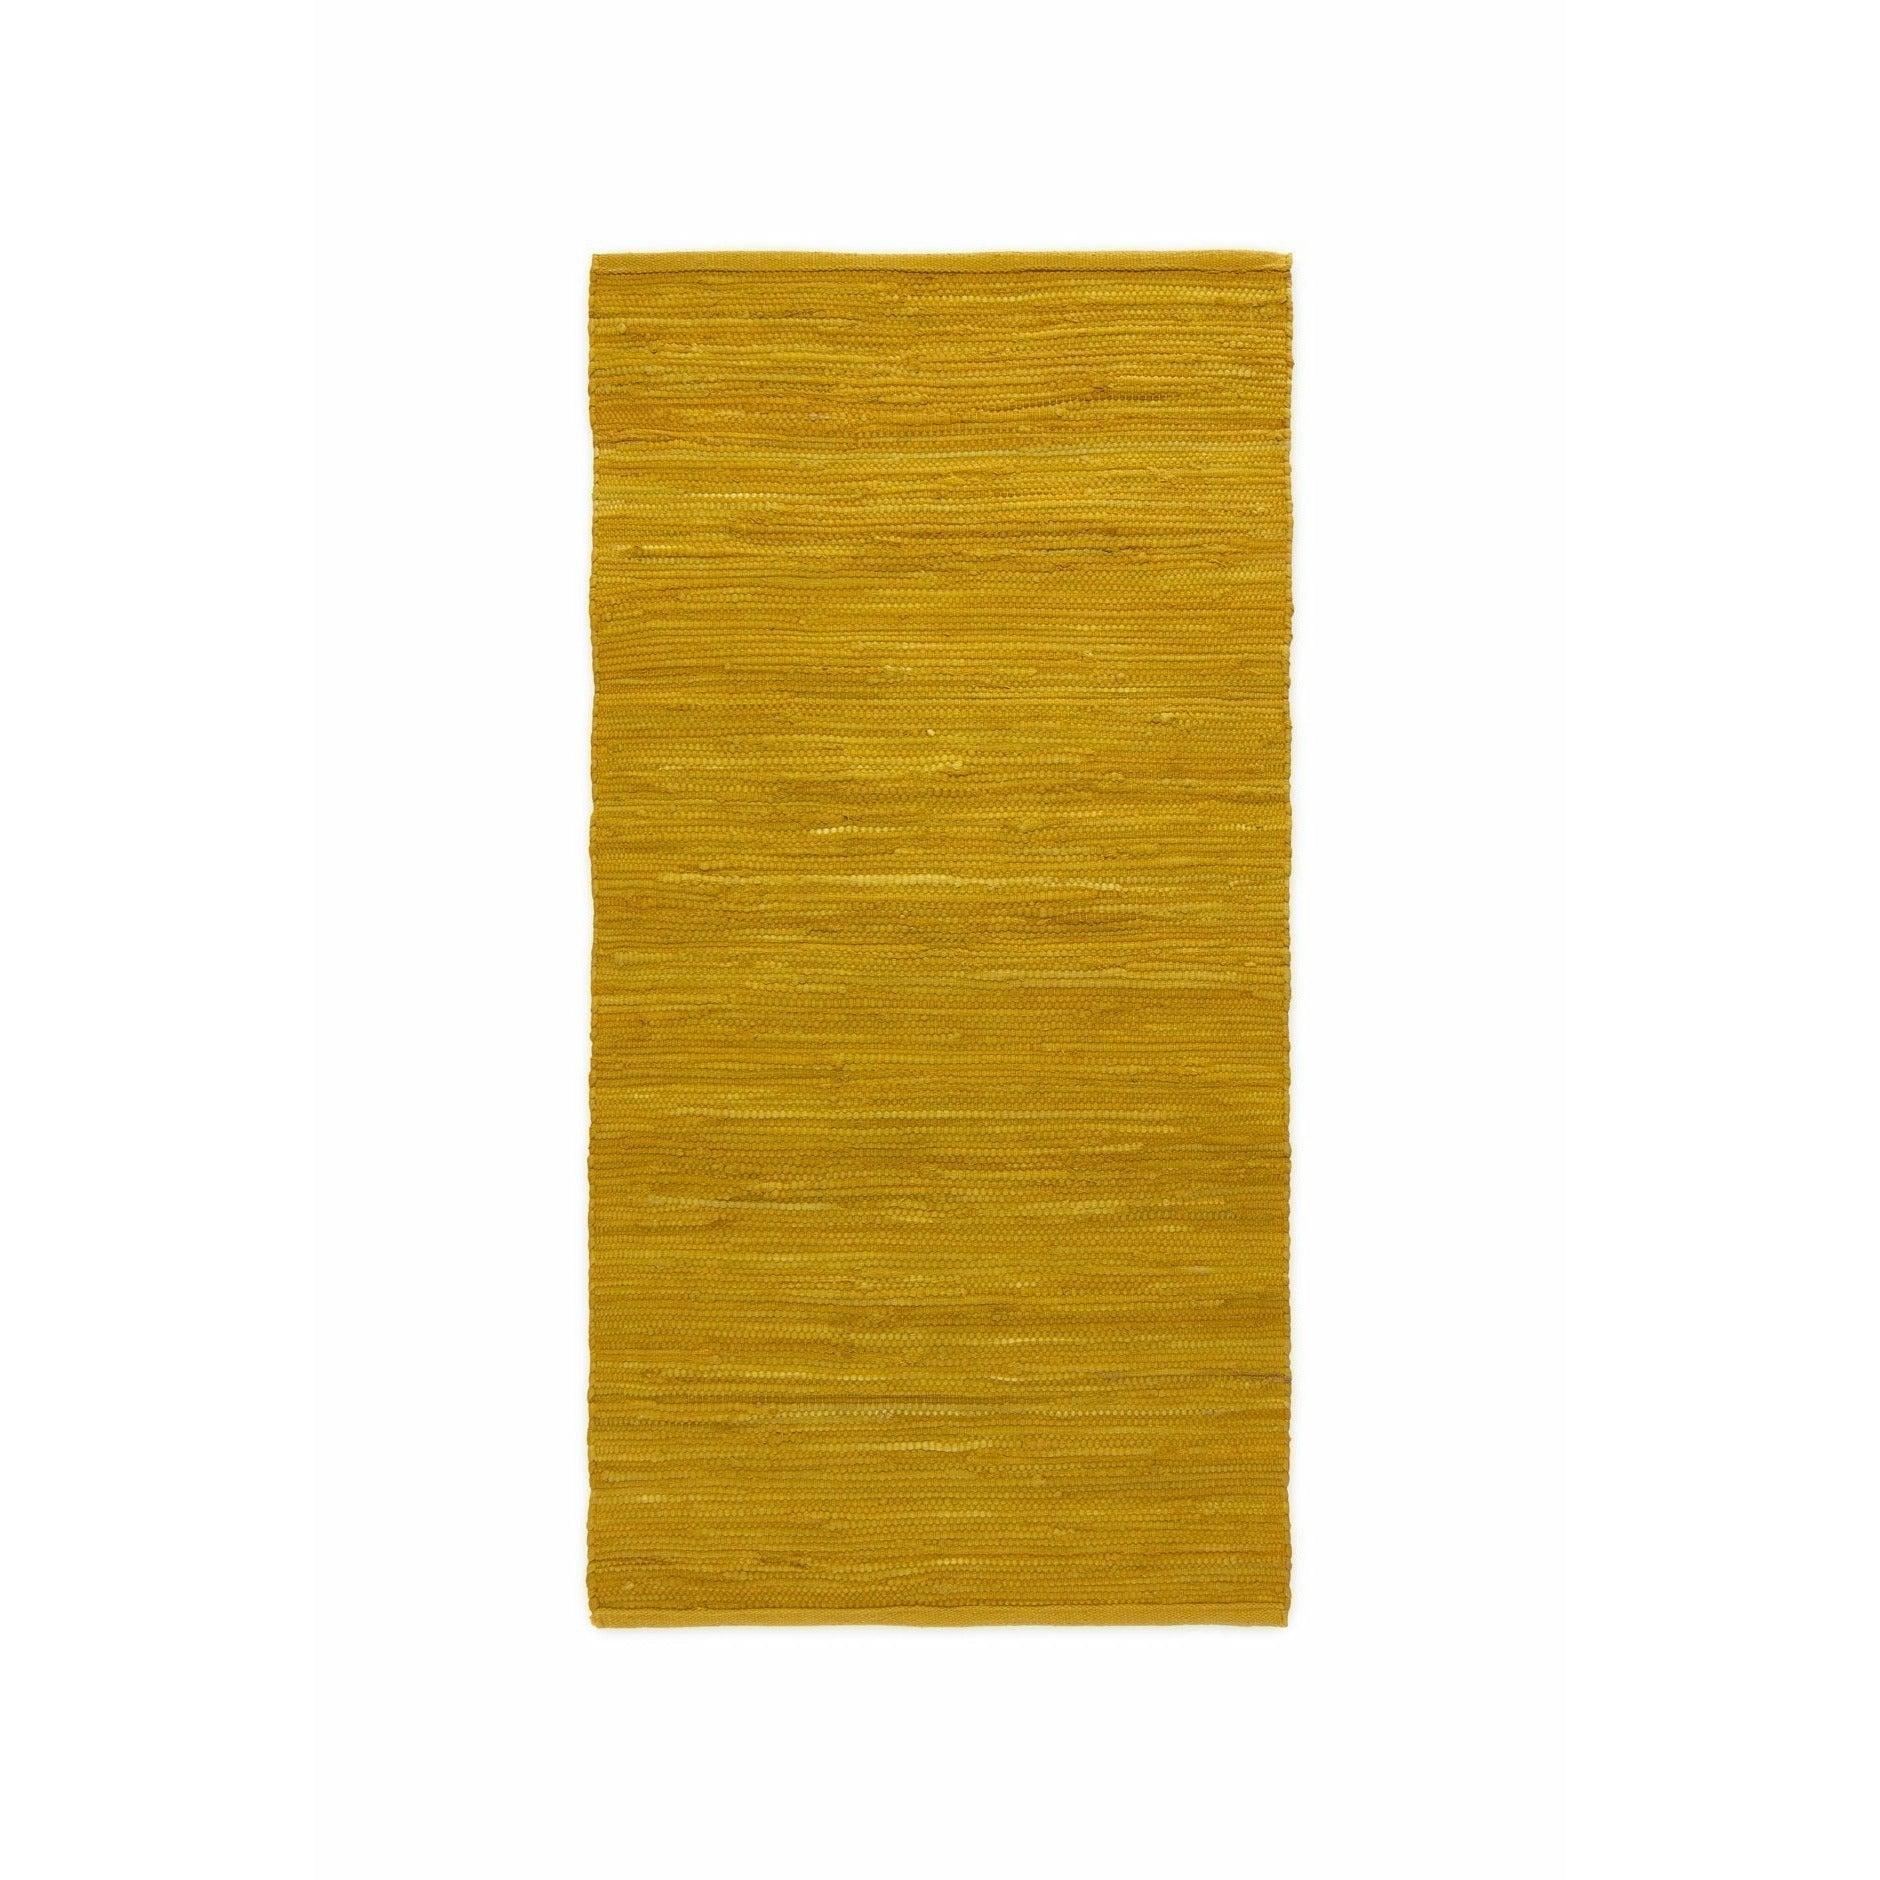 Rug Solid Katoenen tapijt gepolijst barnsteen, 60 x 90 cm